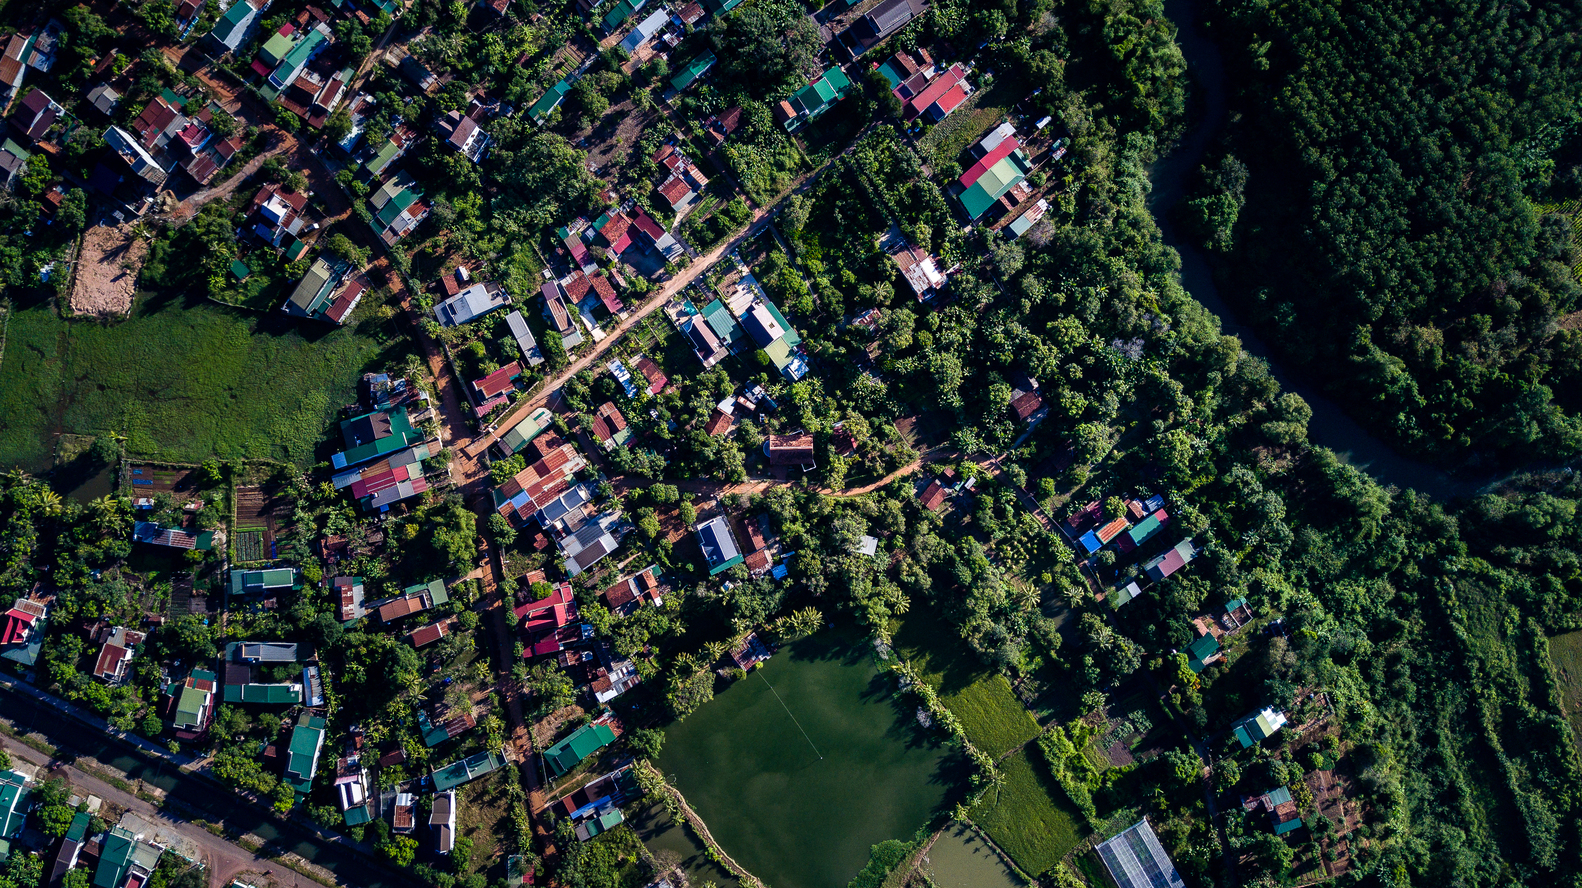 YT House tọa lạc tại một ngôi làng nhỏ trên vùng đồng bằng tương đối bằng phẳng ở phía Tây Bắc tỉnh Đắk Lắk. 